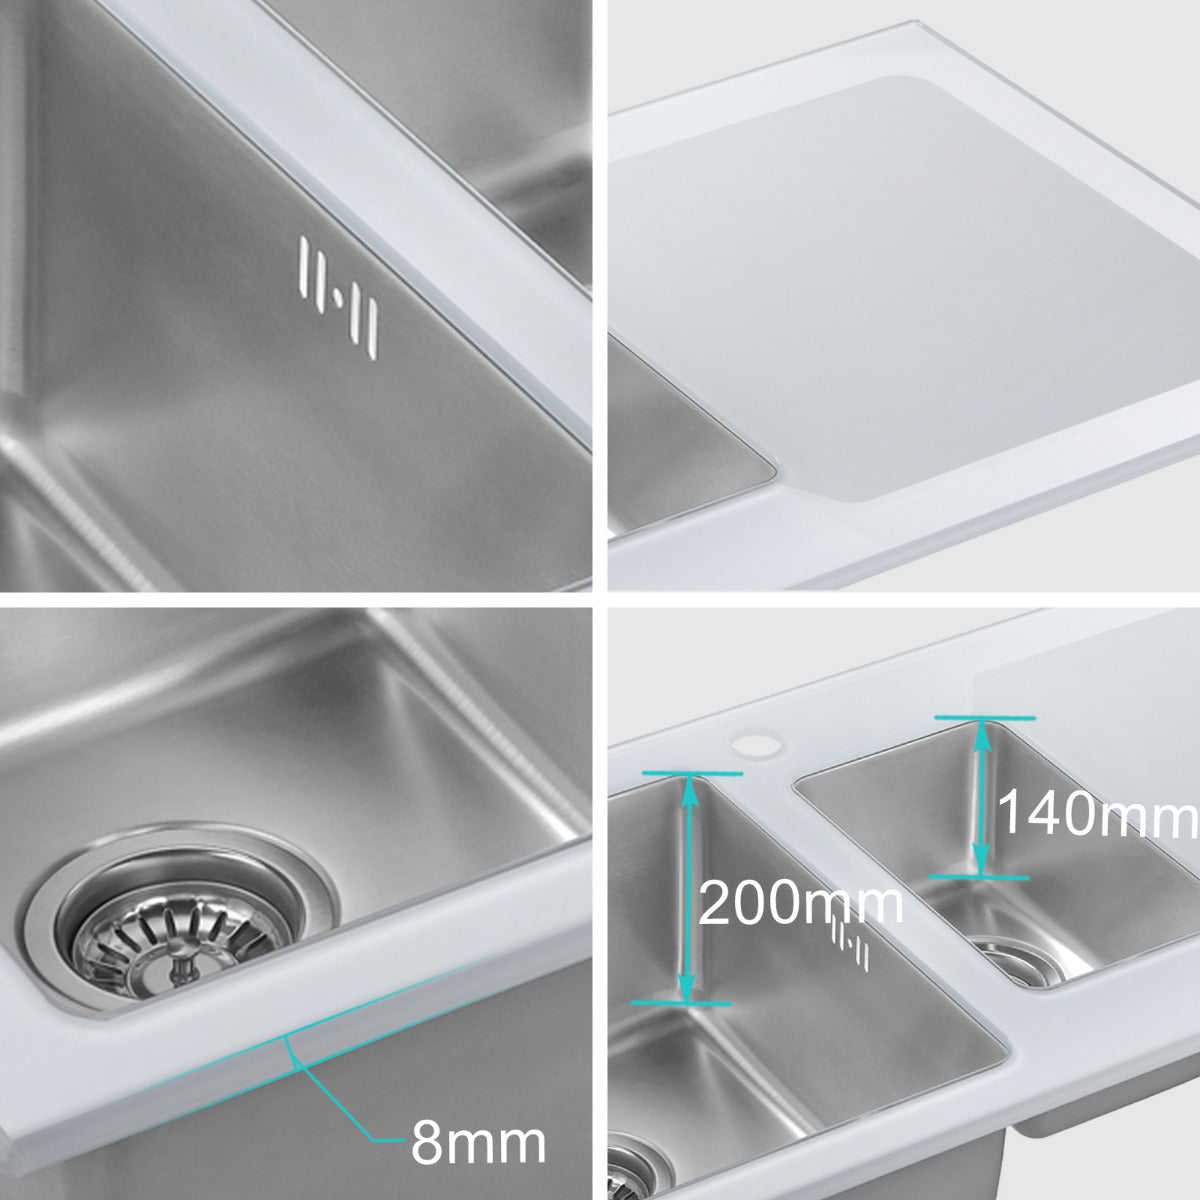 JassferryJASSFERRY White Glass Top Kitchen Sink Stainless Steel 1.5 Bowl Righthand DrainerKitchen Sinks